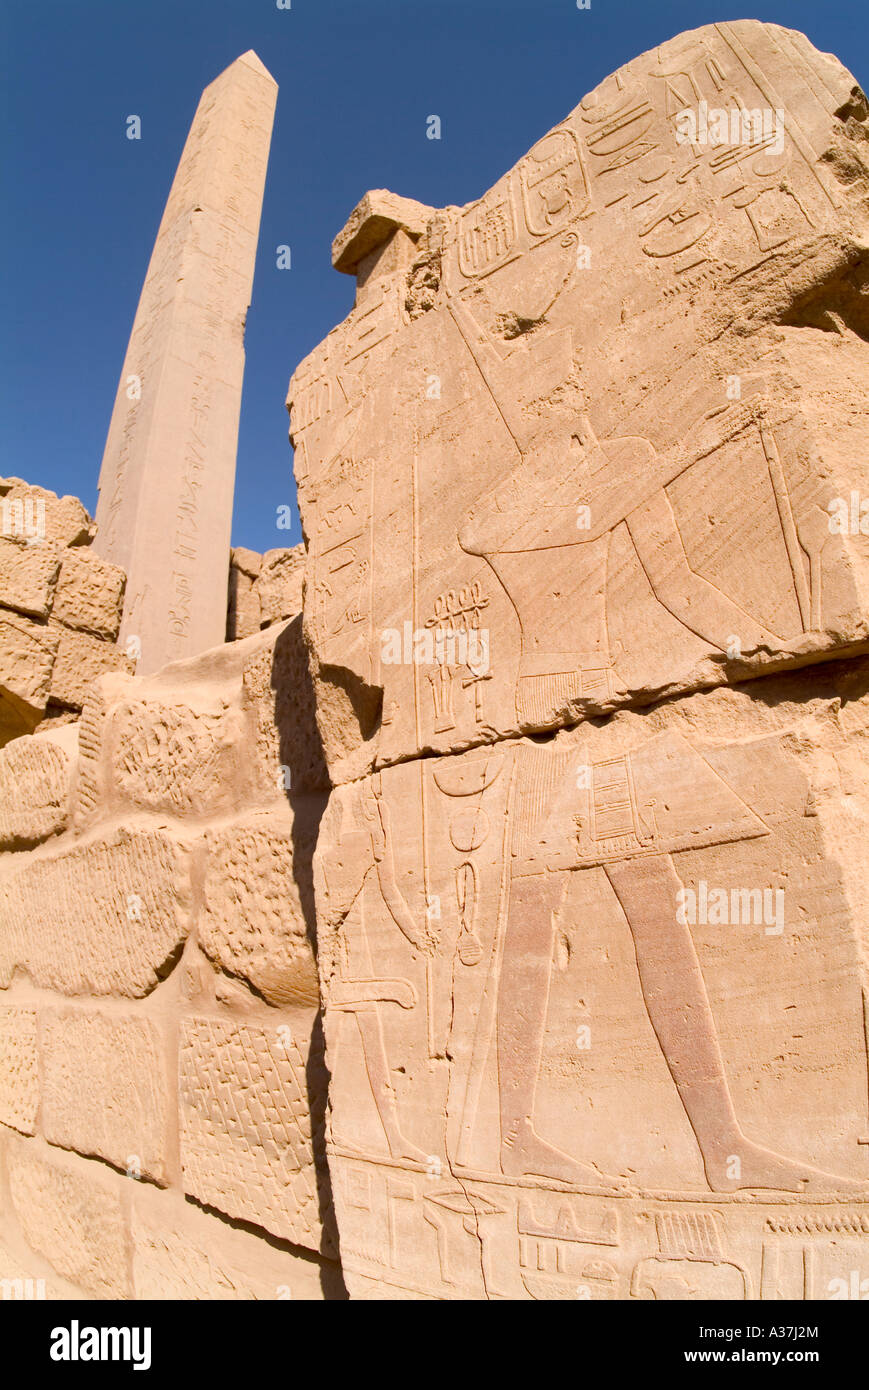 Tempio di Karnak obelisco all'interno del terzo pilone verso l'alto consente di visualizzare i simboli di figure la decorazione parietale Karnak Egitto Nord Africa Foto Stock